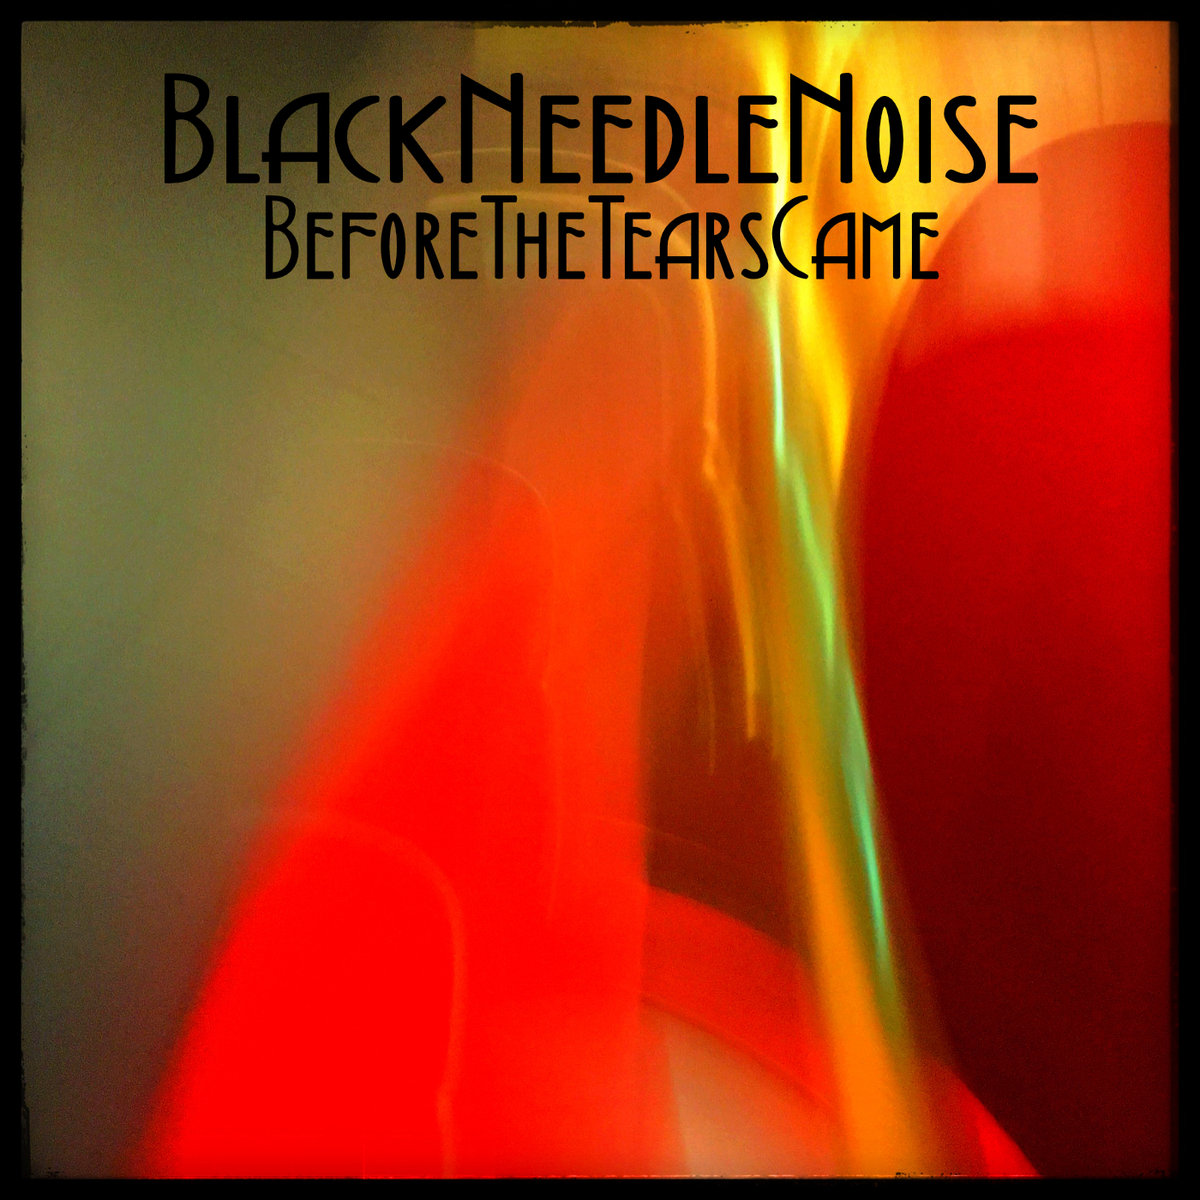 black-needle-noise-album-pic